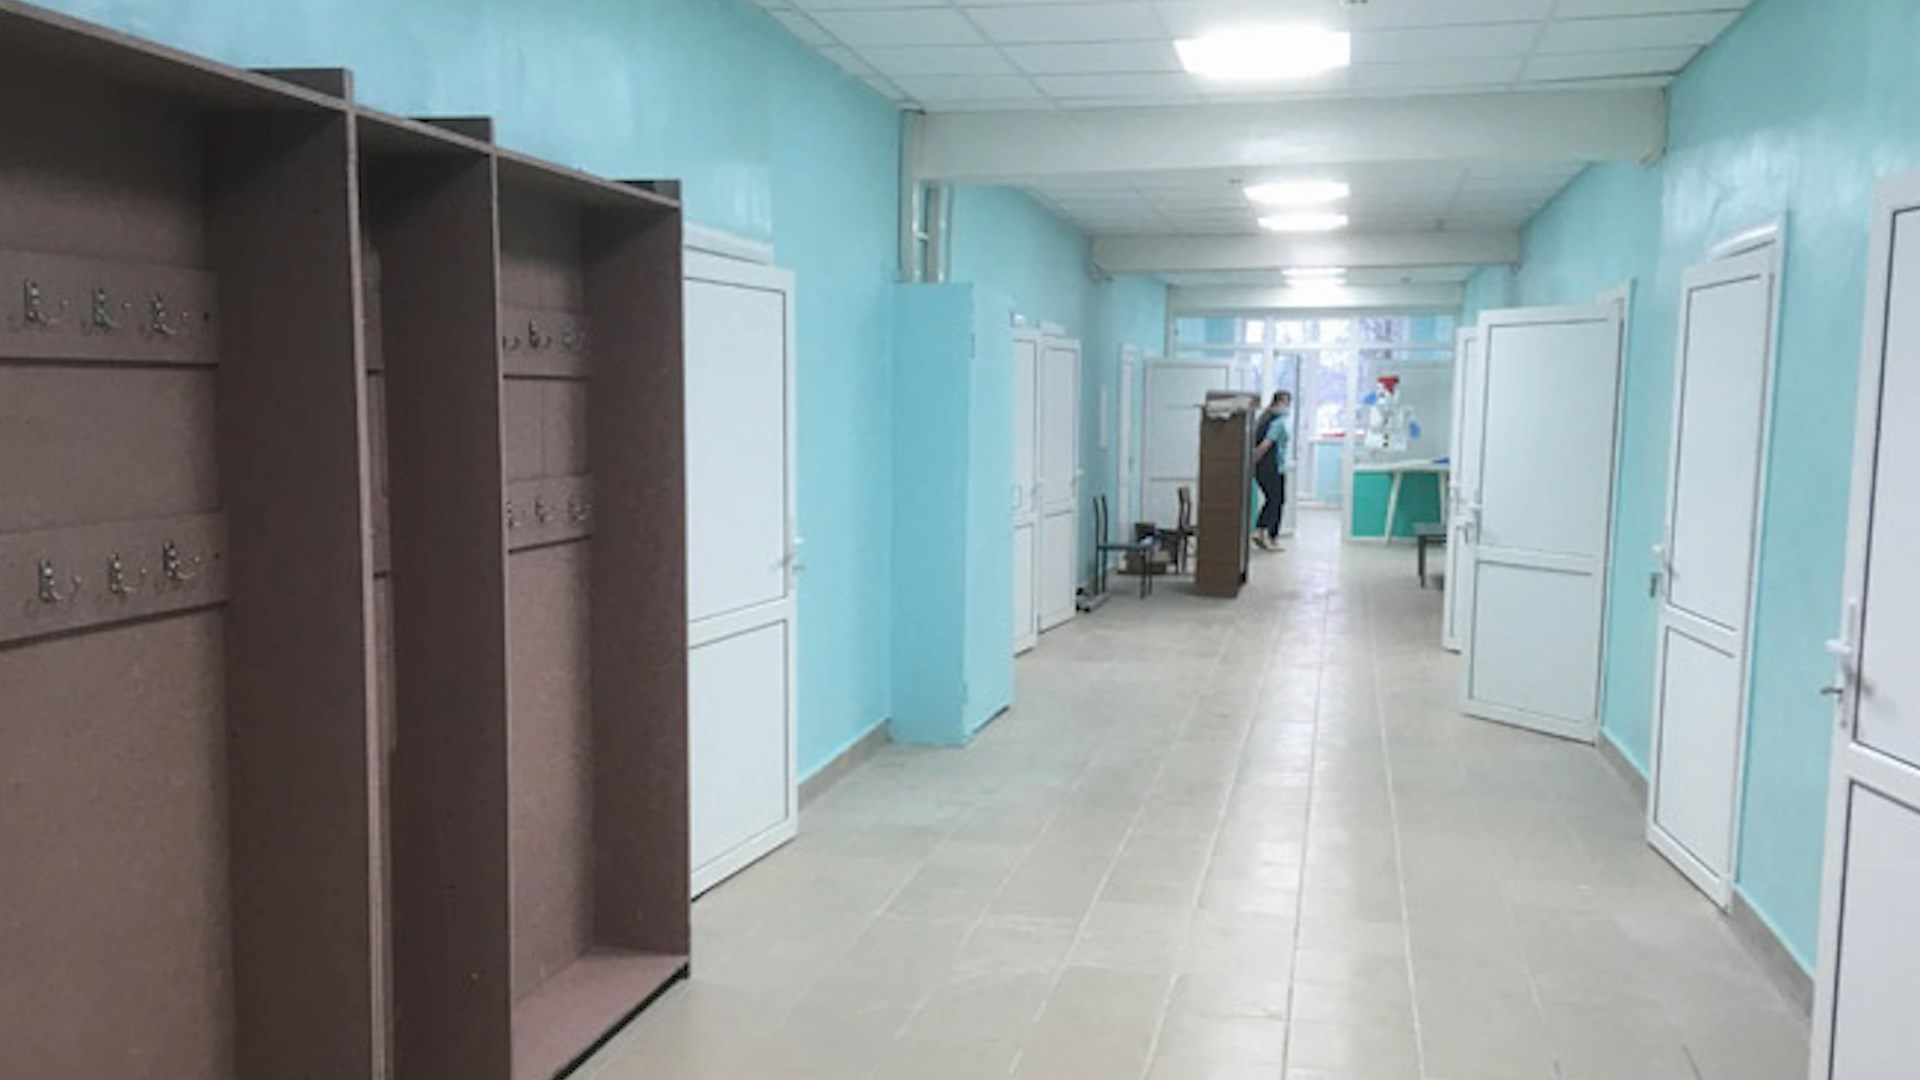 Поликлинику в костромском райцентре открыли после ремонта